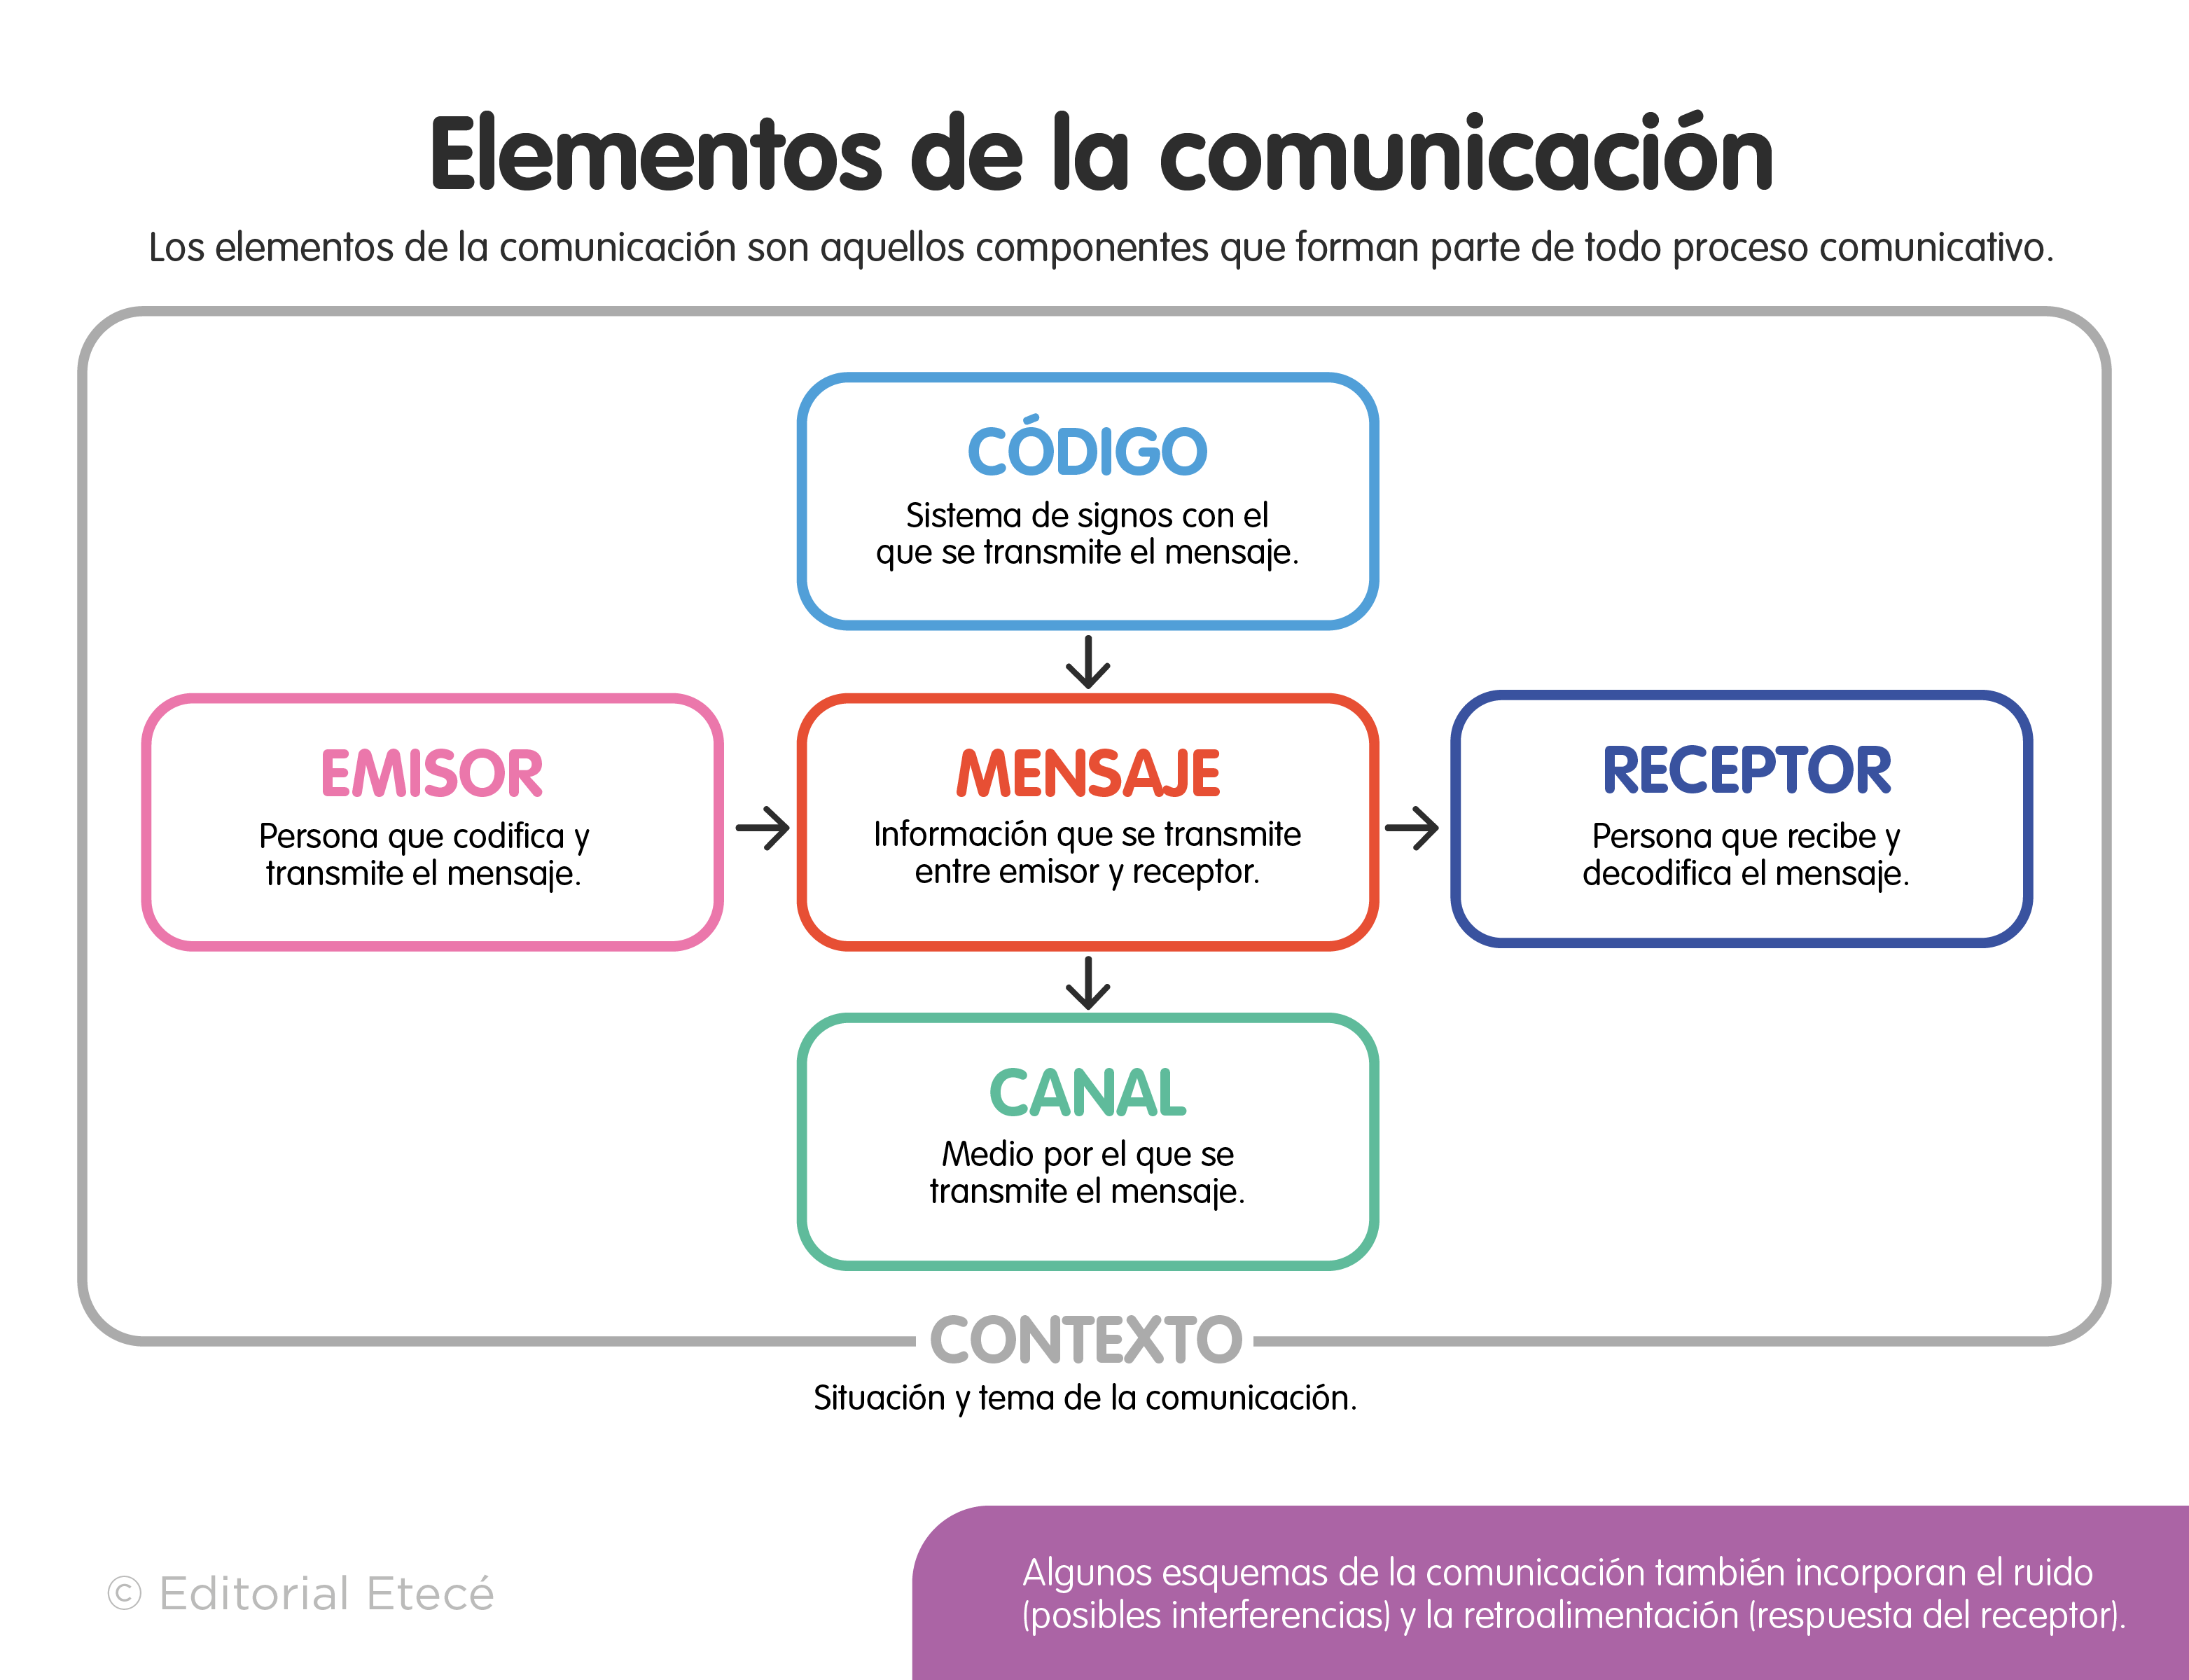 Elementos de la comunicación (con ejemplos)